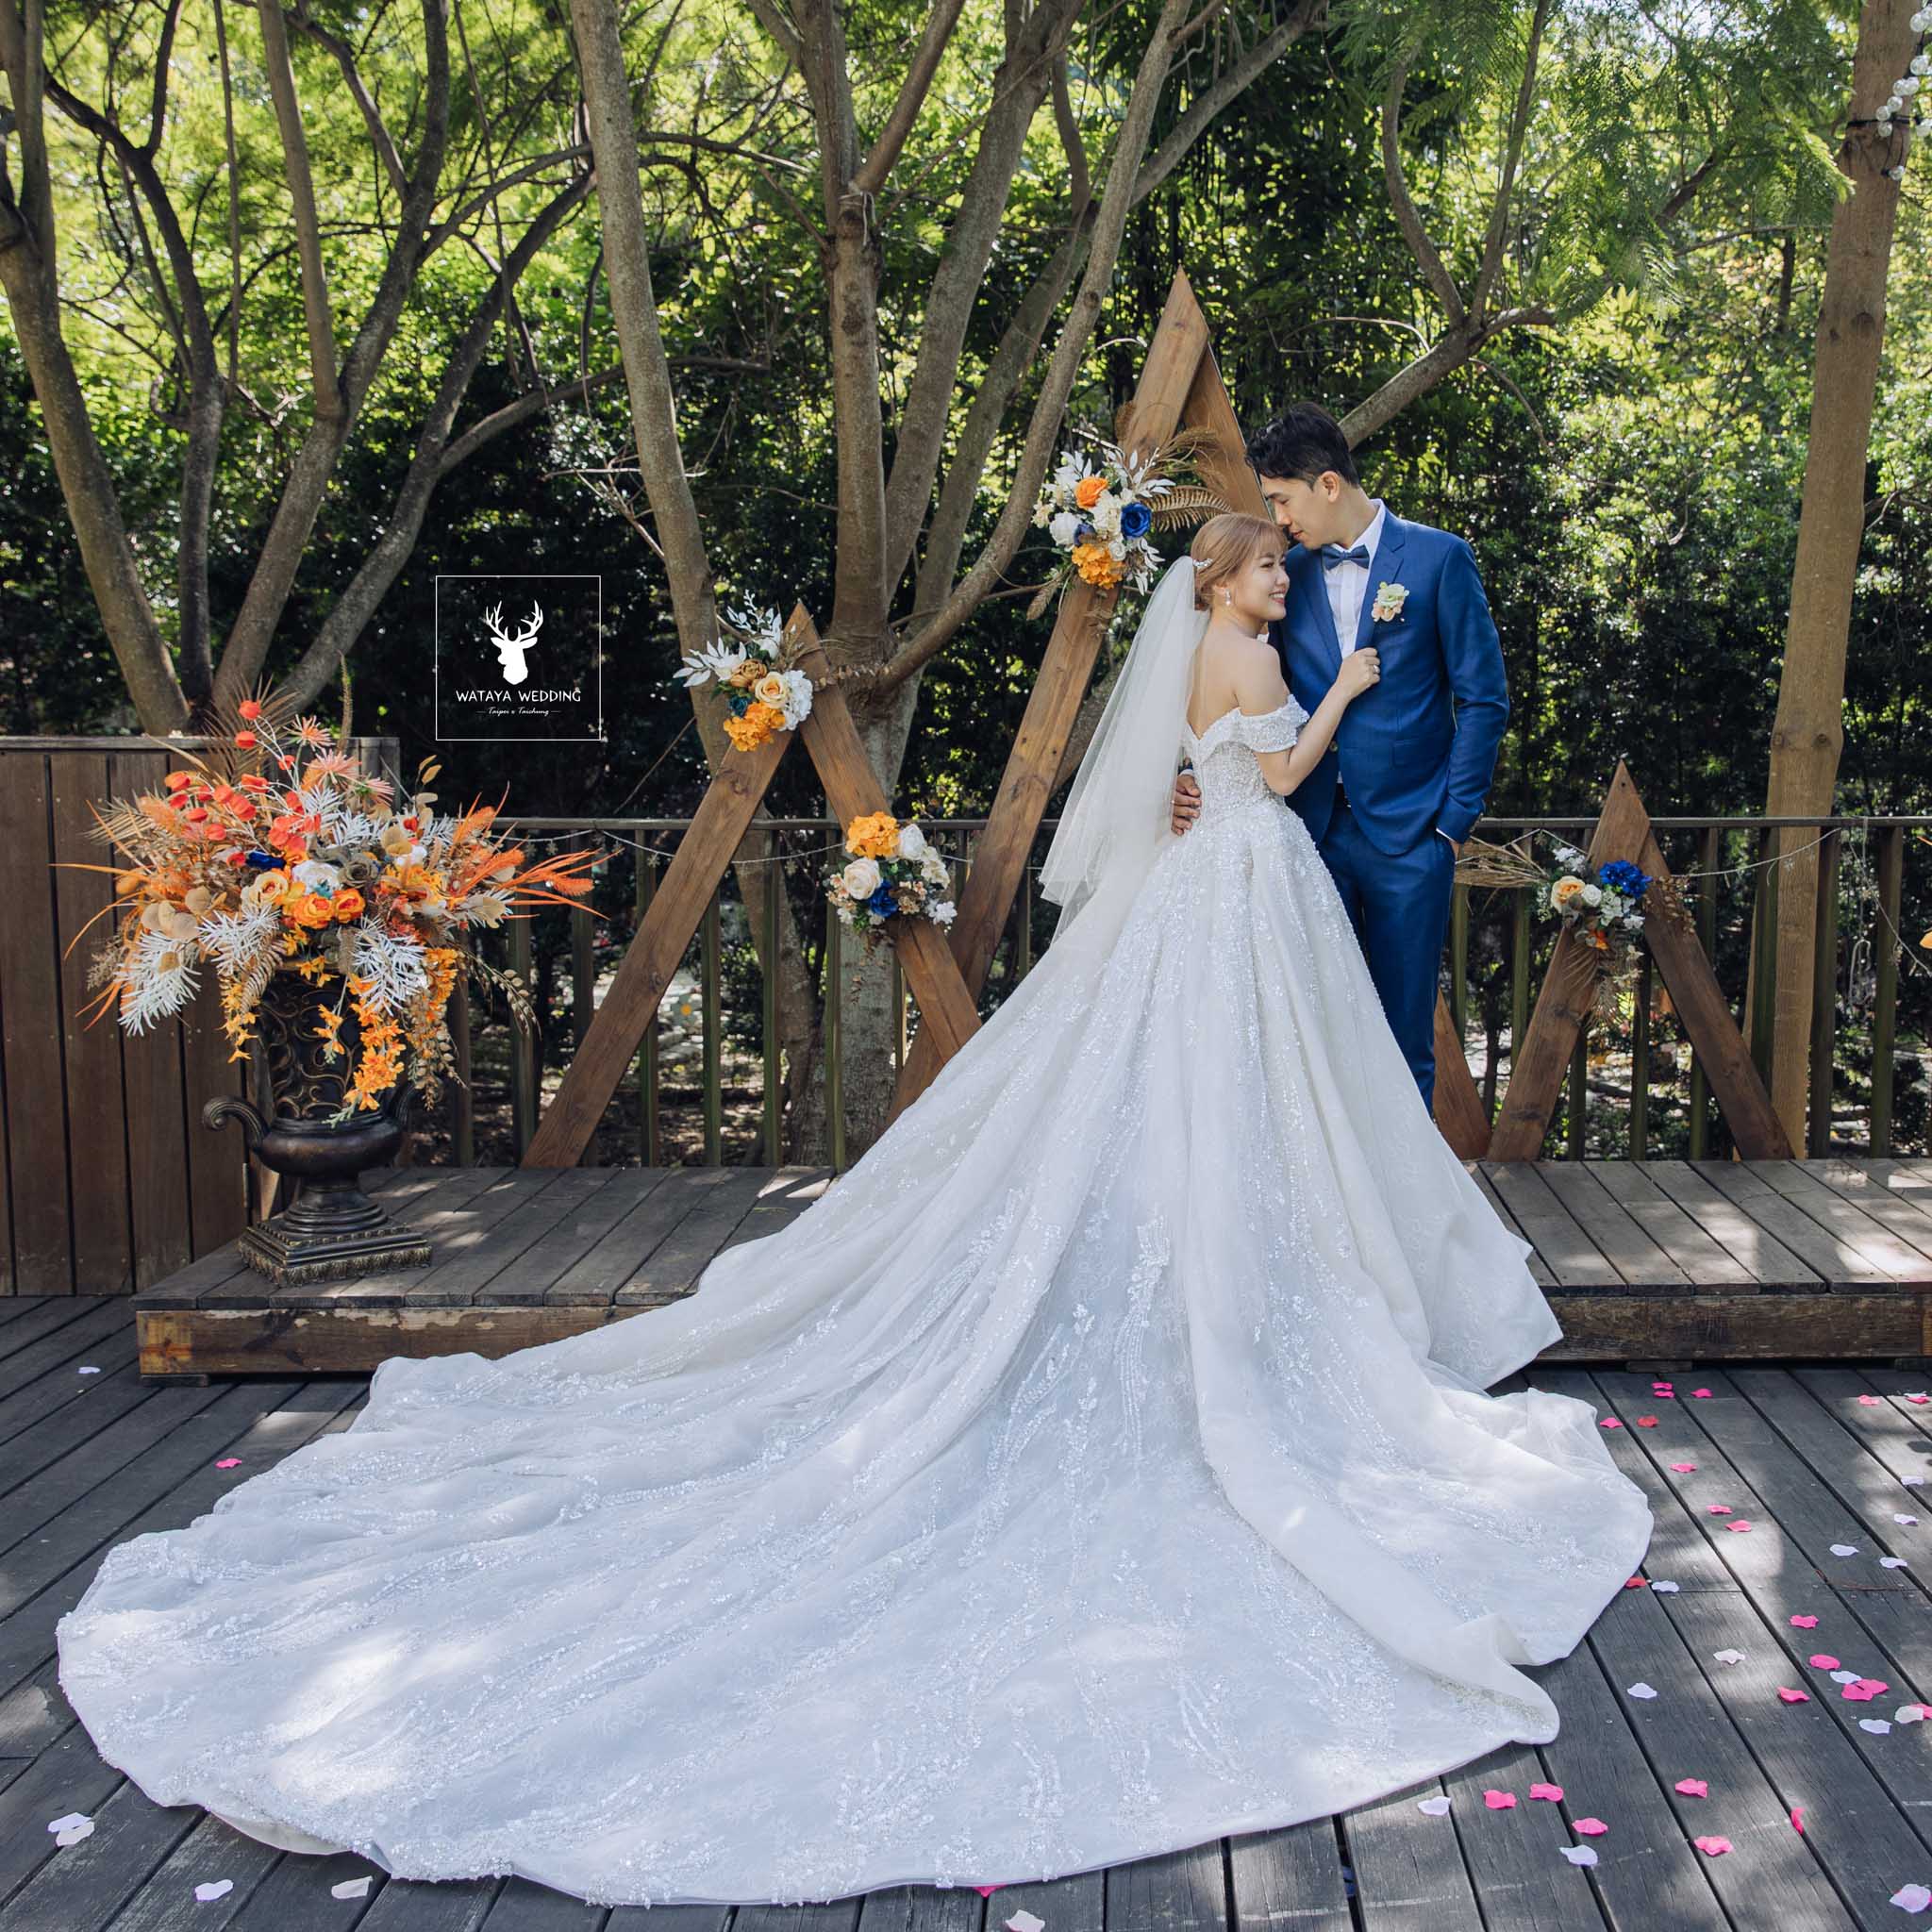 台中綿谷婚禮平面攝影 (44)